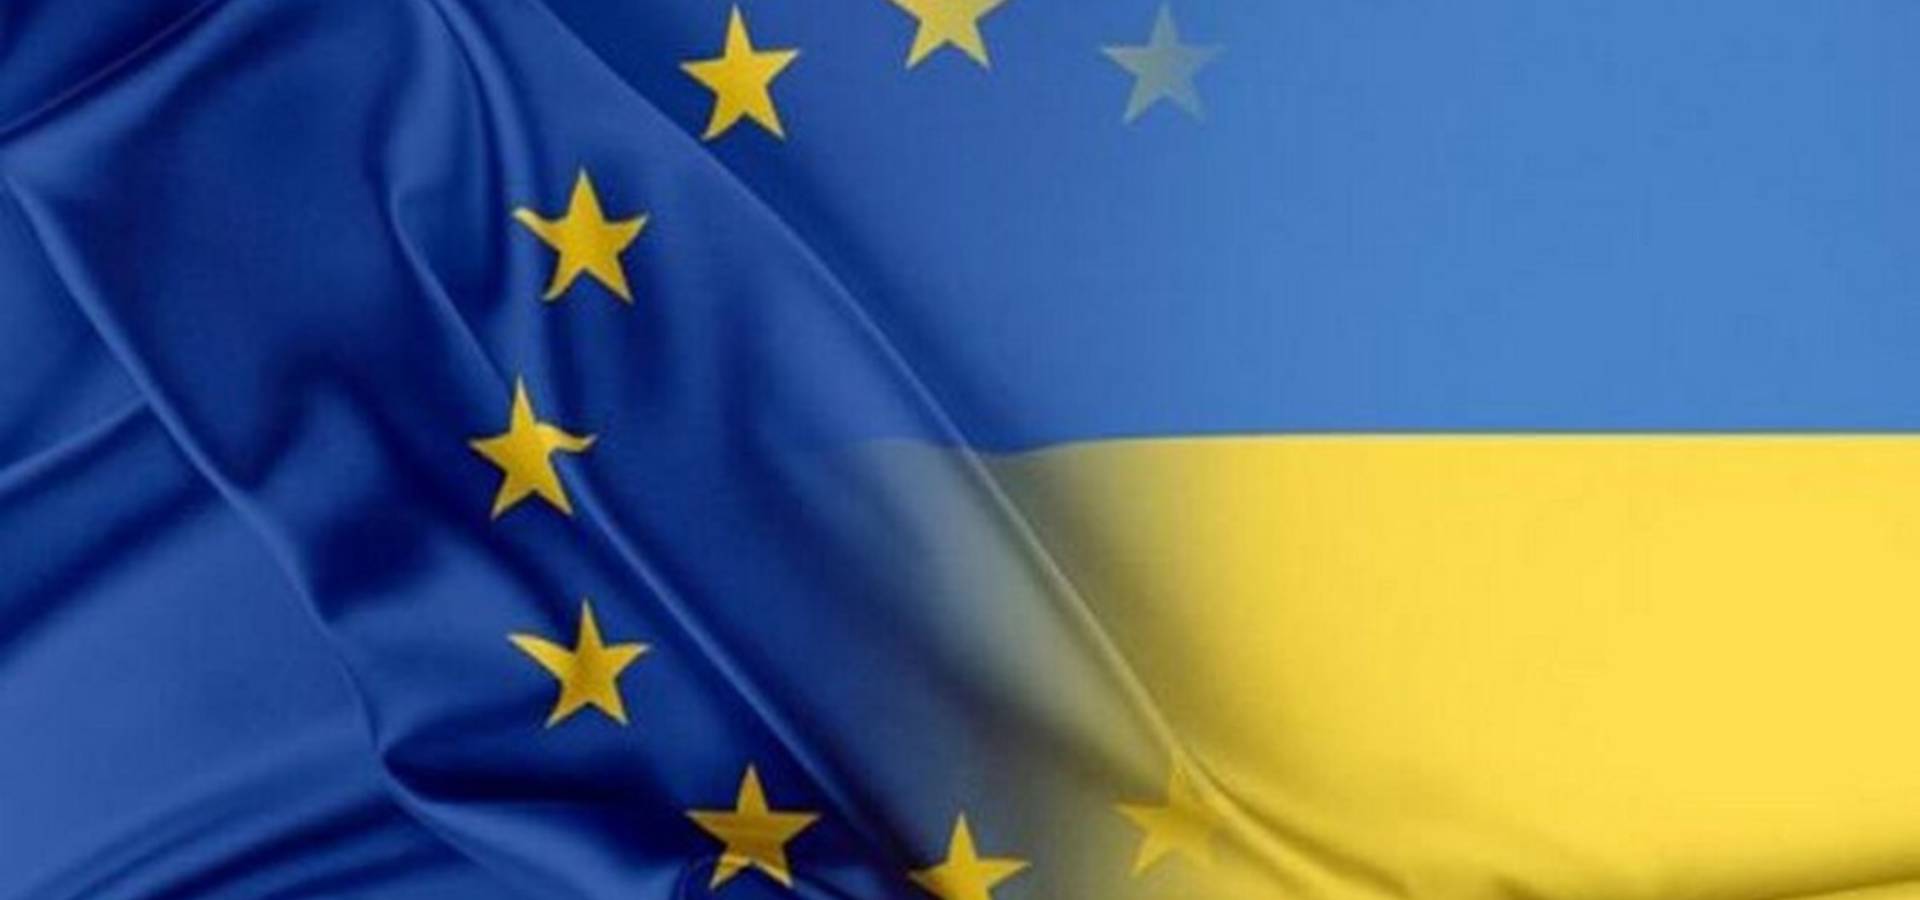 Більшість громадян ЄС схвалюють допомогу Україні у війні з окупантами